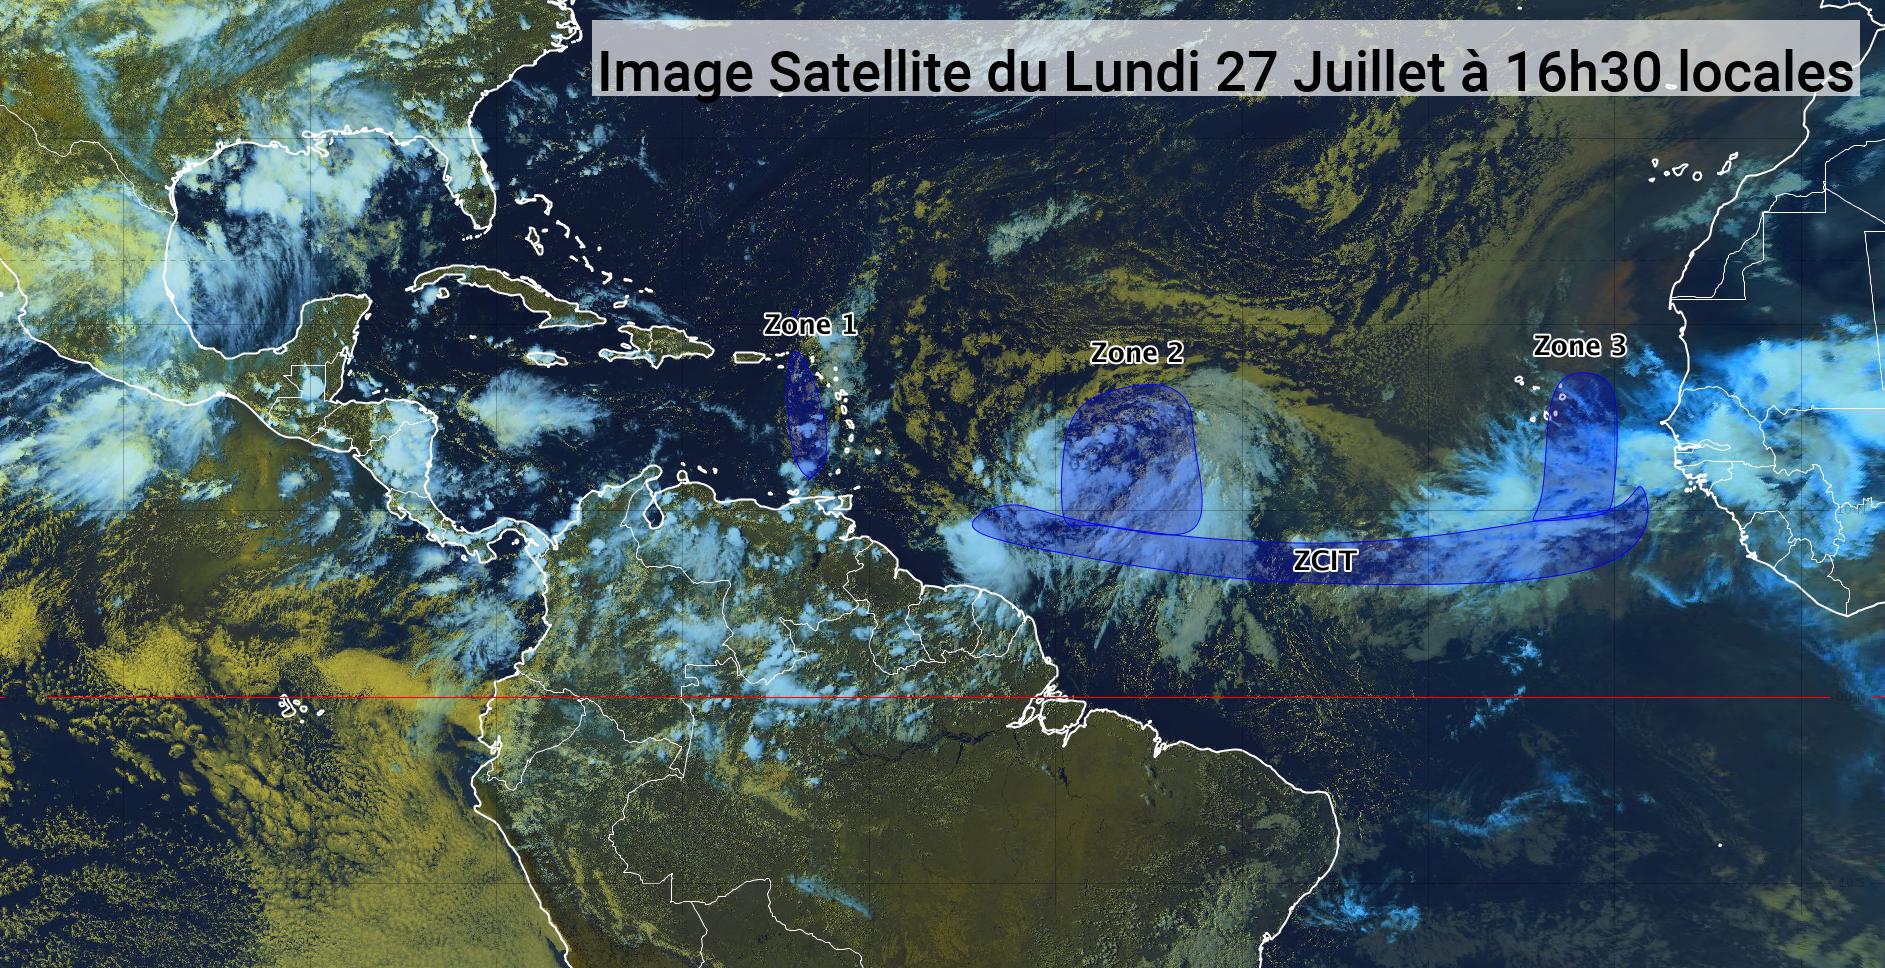     L'onde tropicale 21 poursuit sa trajectoire en direction des Antilles

